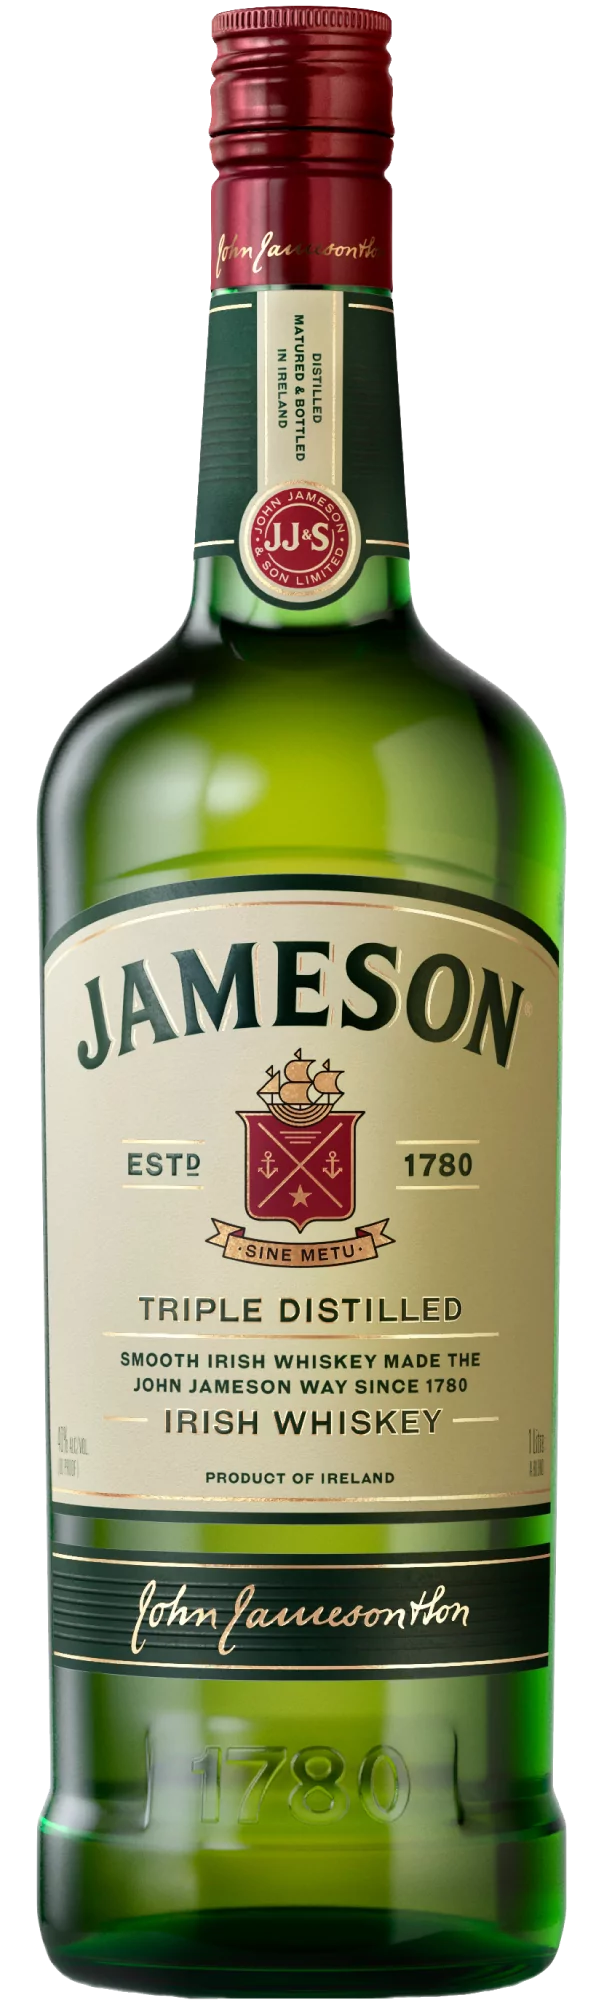 Віскі Jameson 1л 40%